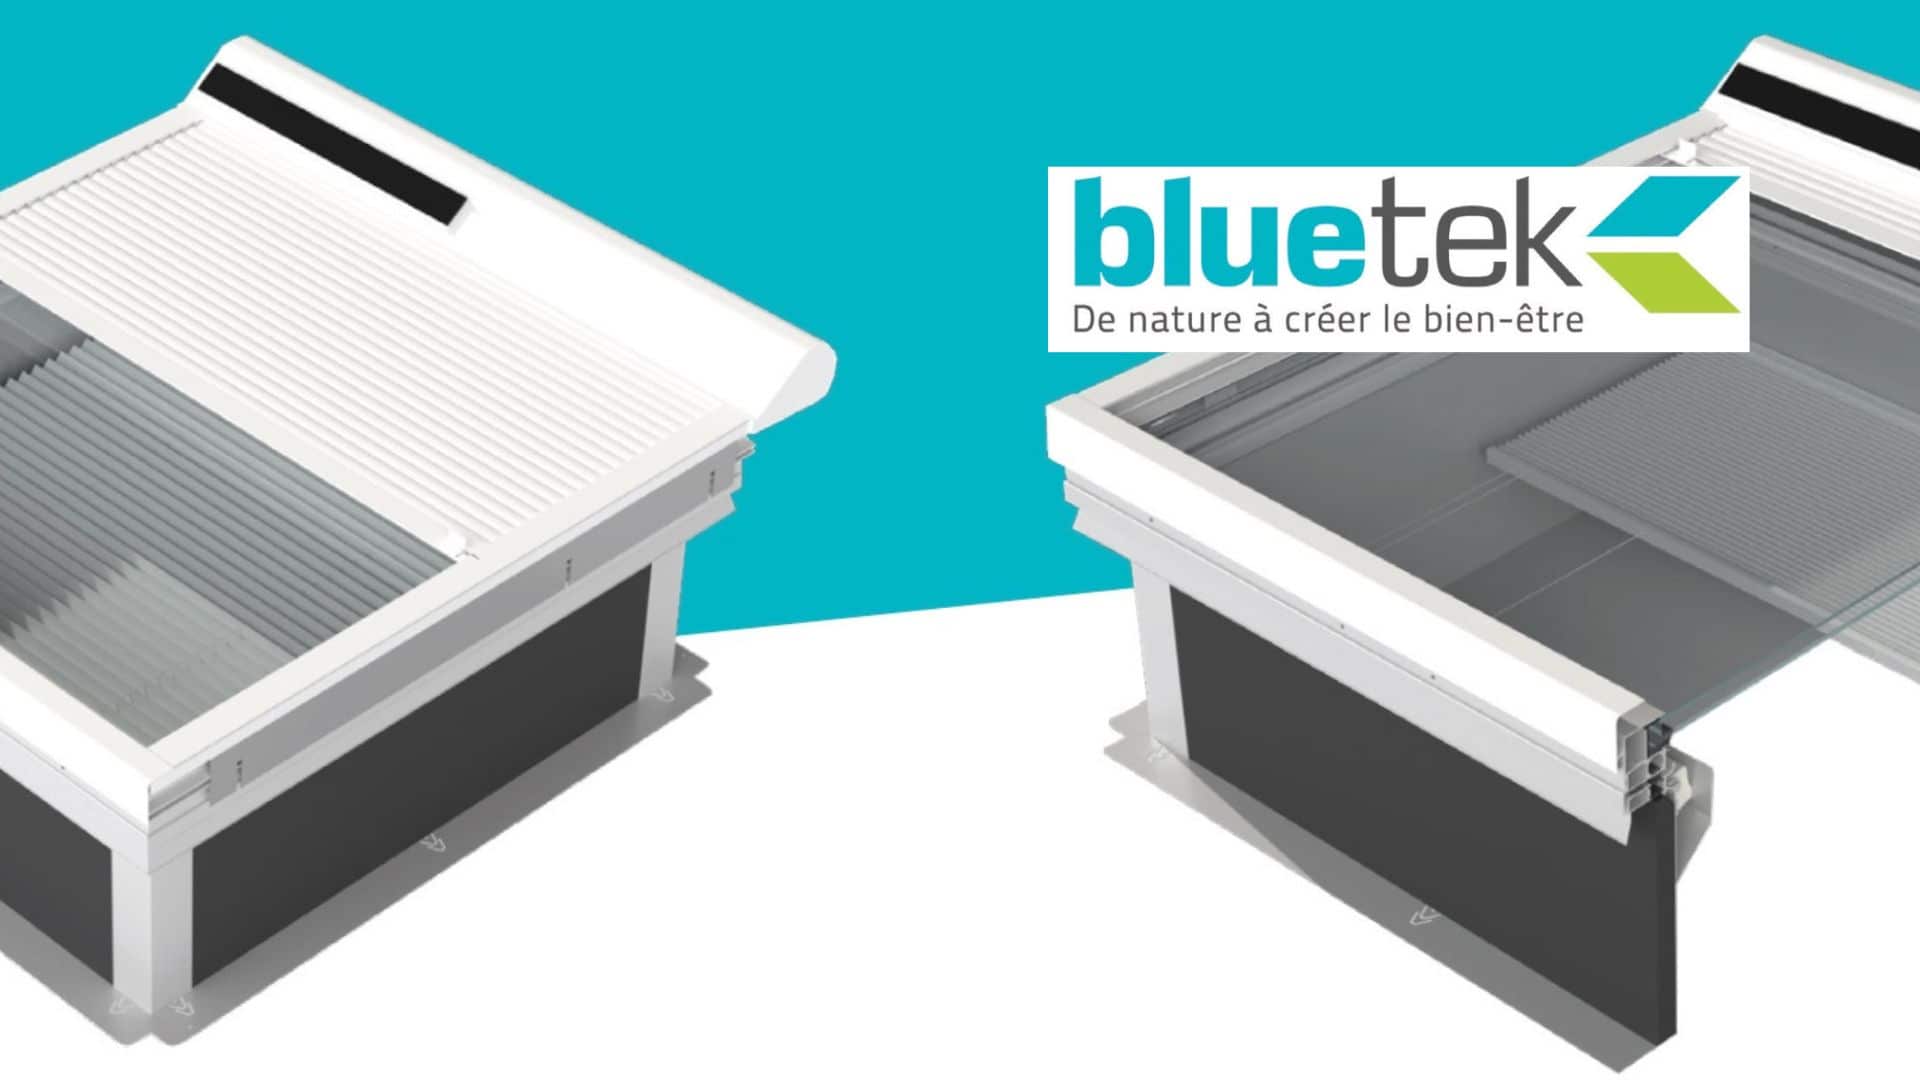 Nouvelle gamme – BLUETEK lance sa gamme de protections solaires extérieures et intérieures